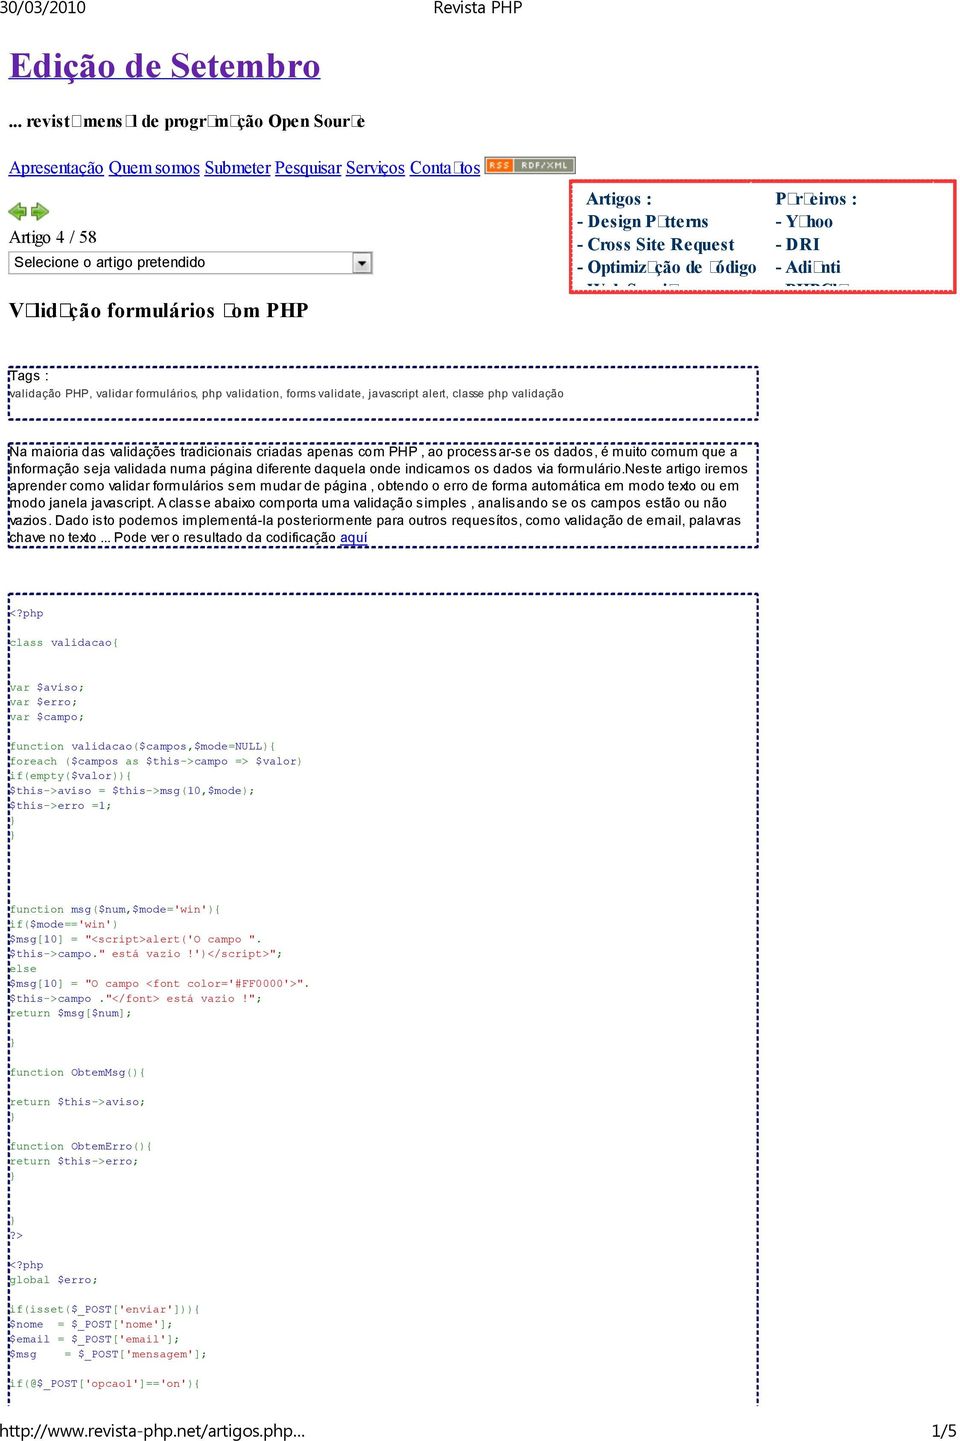 Patterns - Cross Site Request - Optimização de código - Web Services Parceiros : - Yahoo - DRI - Adianti - PHPClasses Tags : validação PHP, validar formulários, php validation, forms validate,